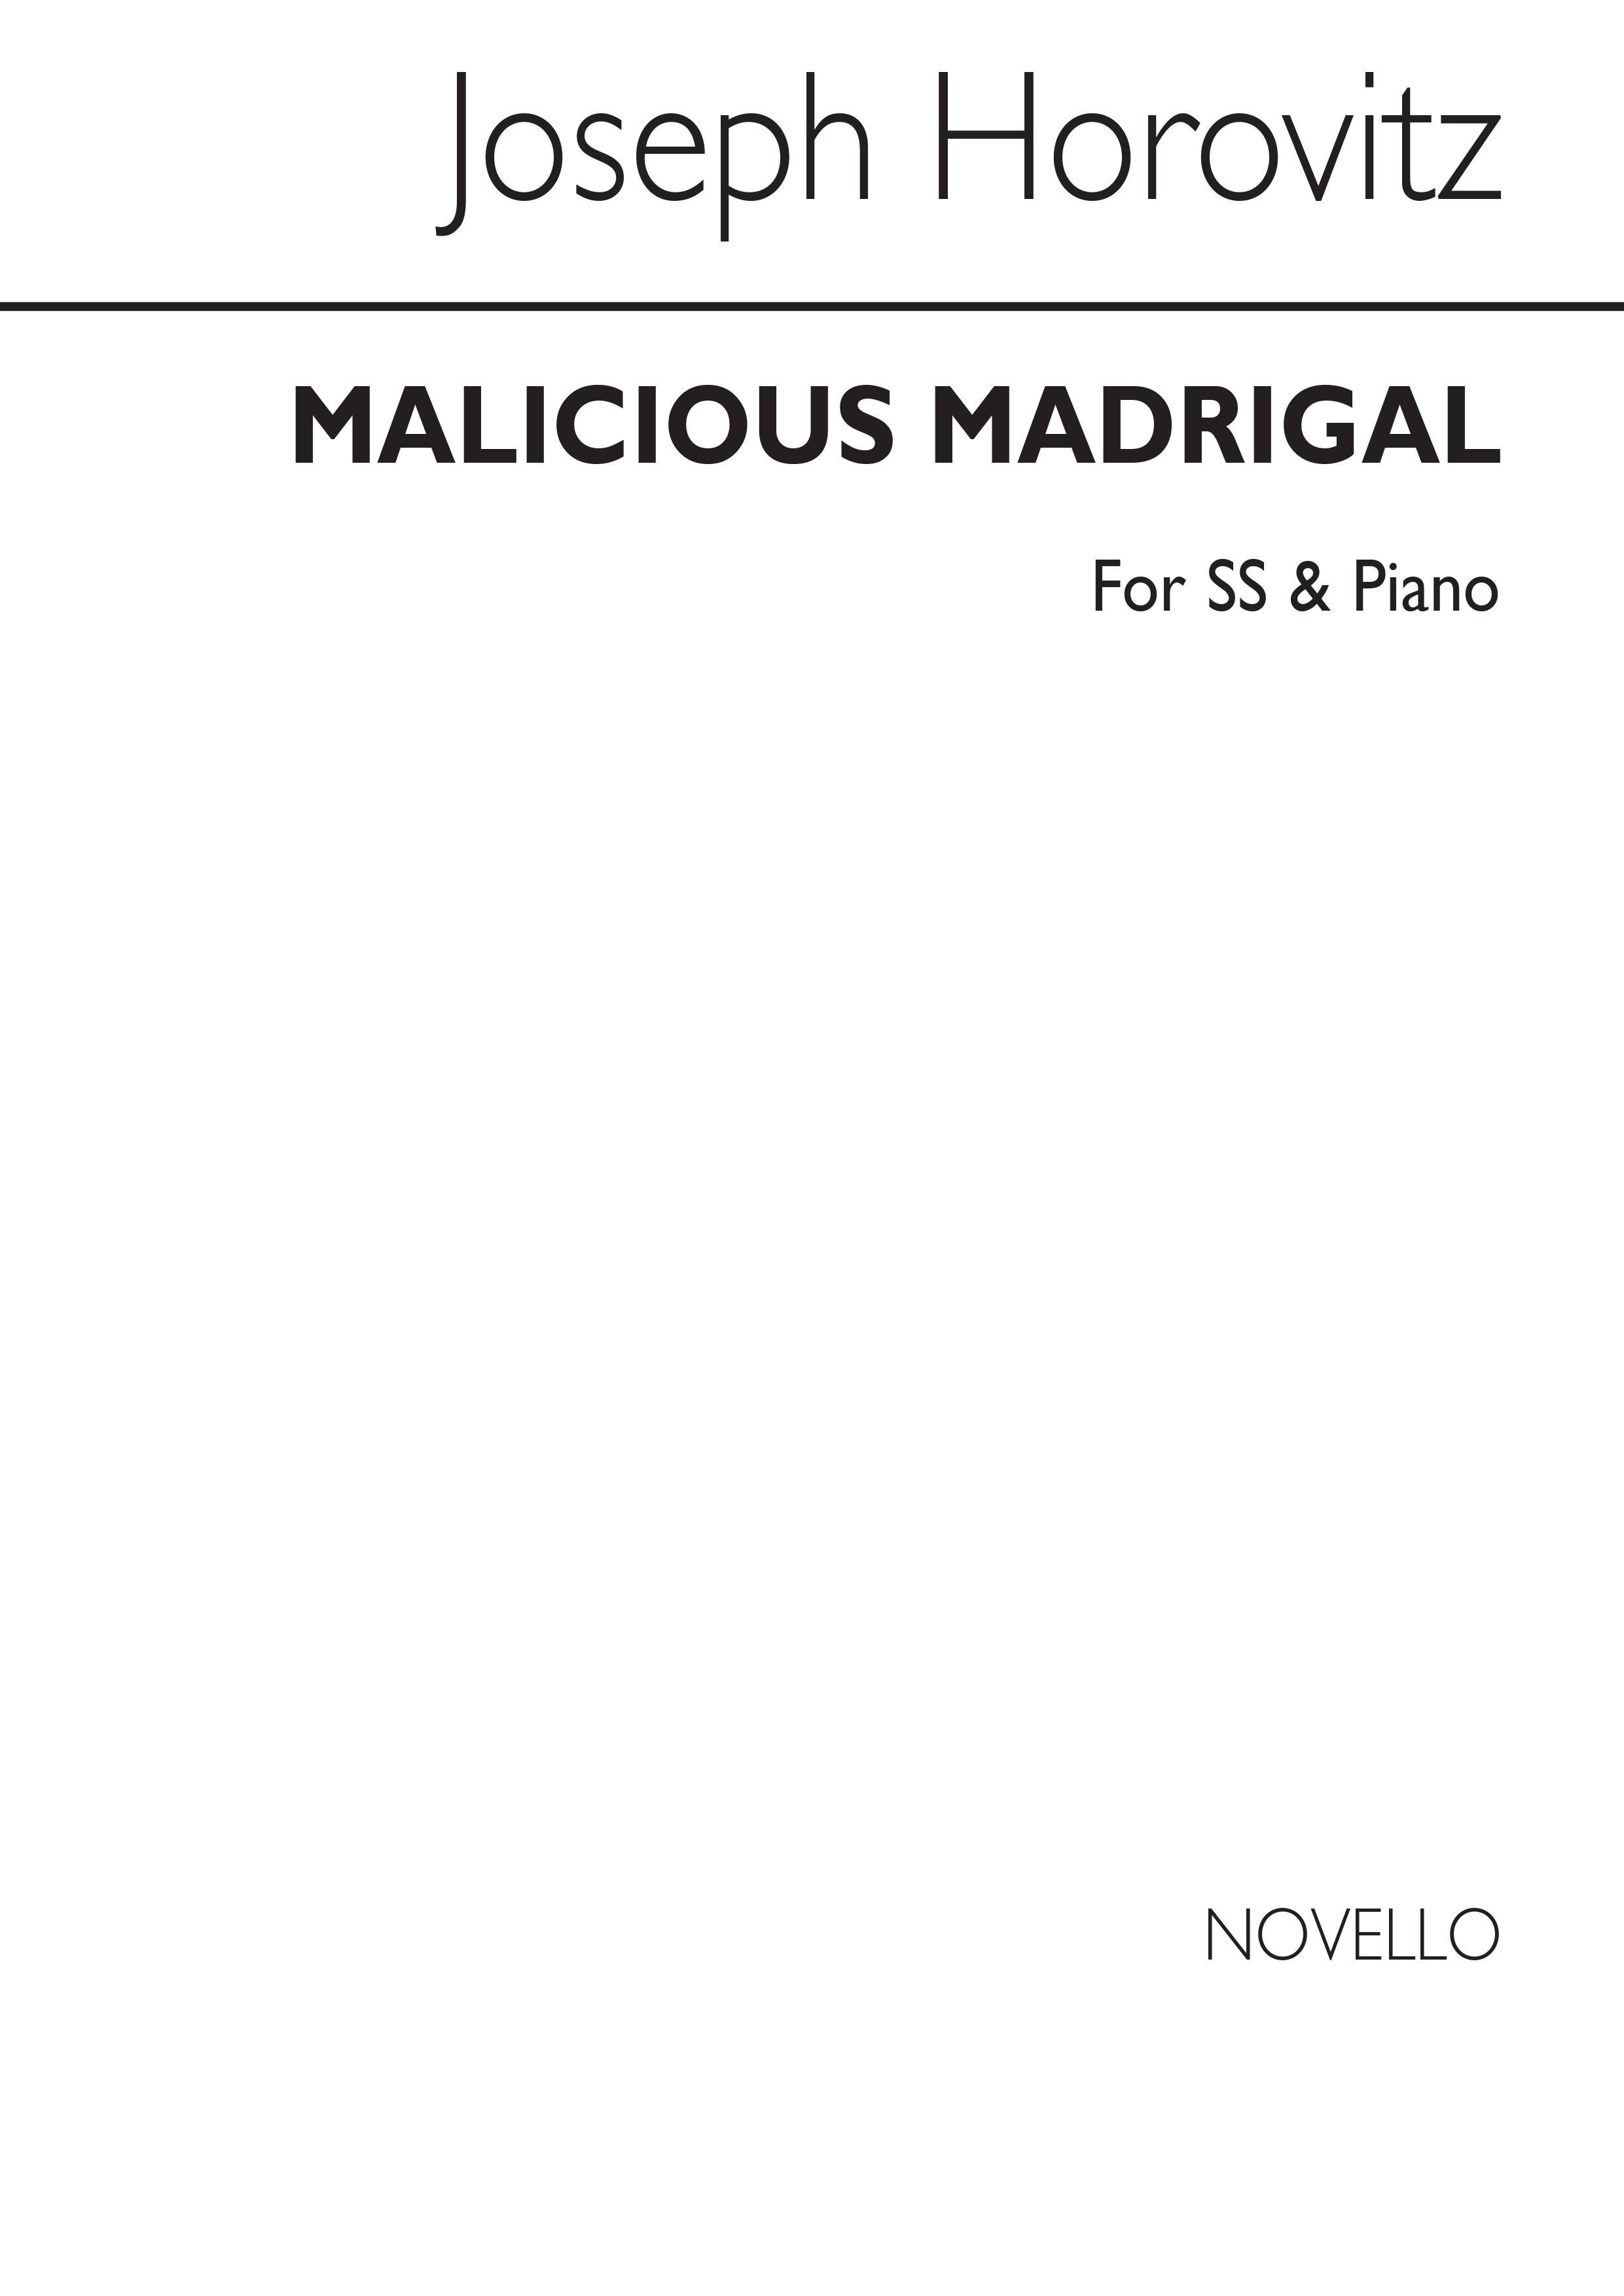 Horovitz: Malicious Madrigal